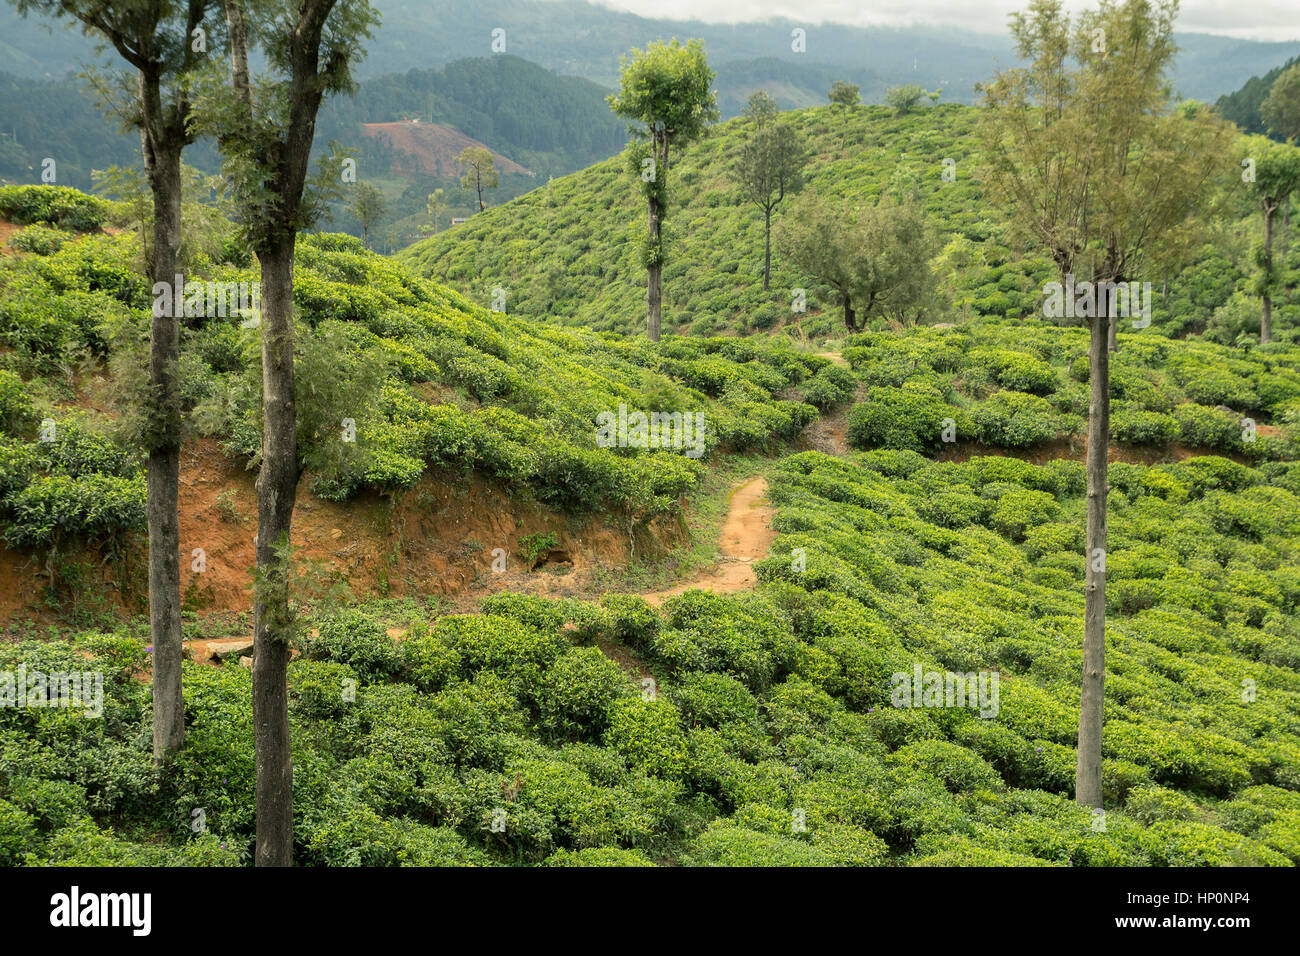 tea plantations. Stock Photo